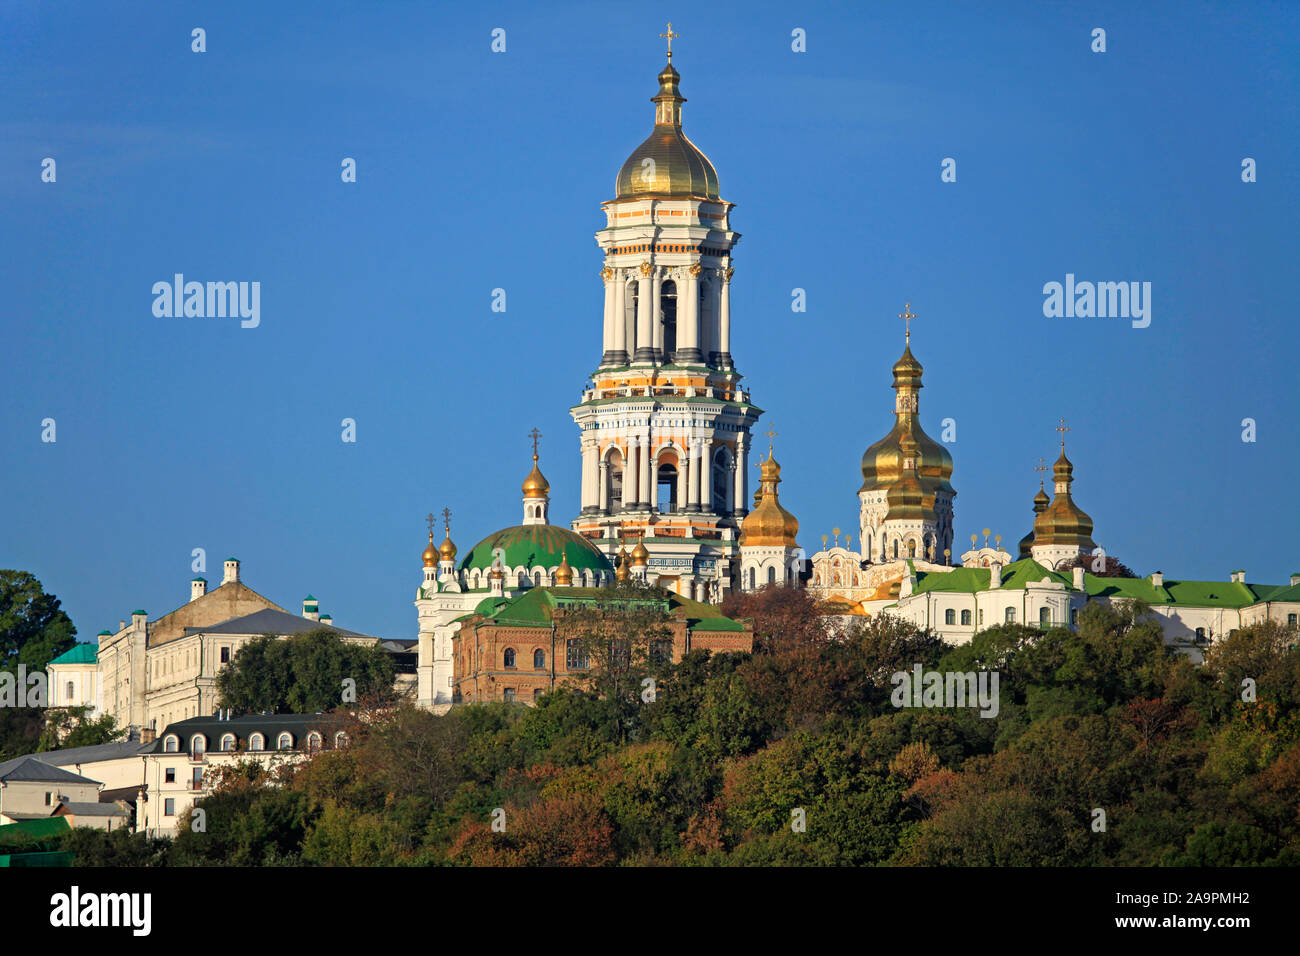 Illustri Centro spirituale dell'Ucraina. Kiev Pechersk (Kyiv Pechersk) Lavra monastero e la torre campanaria (grande torre campanaria) Foto Stock